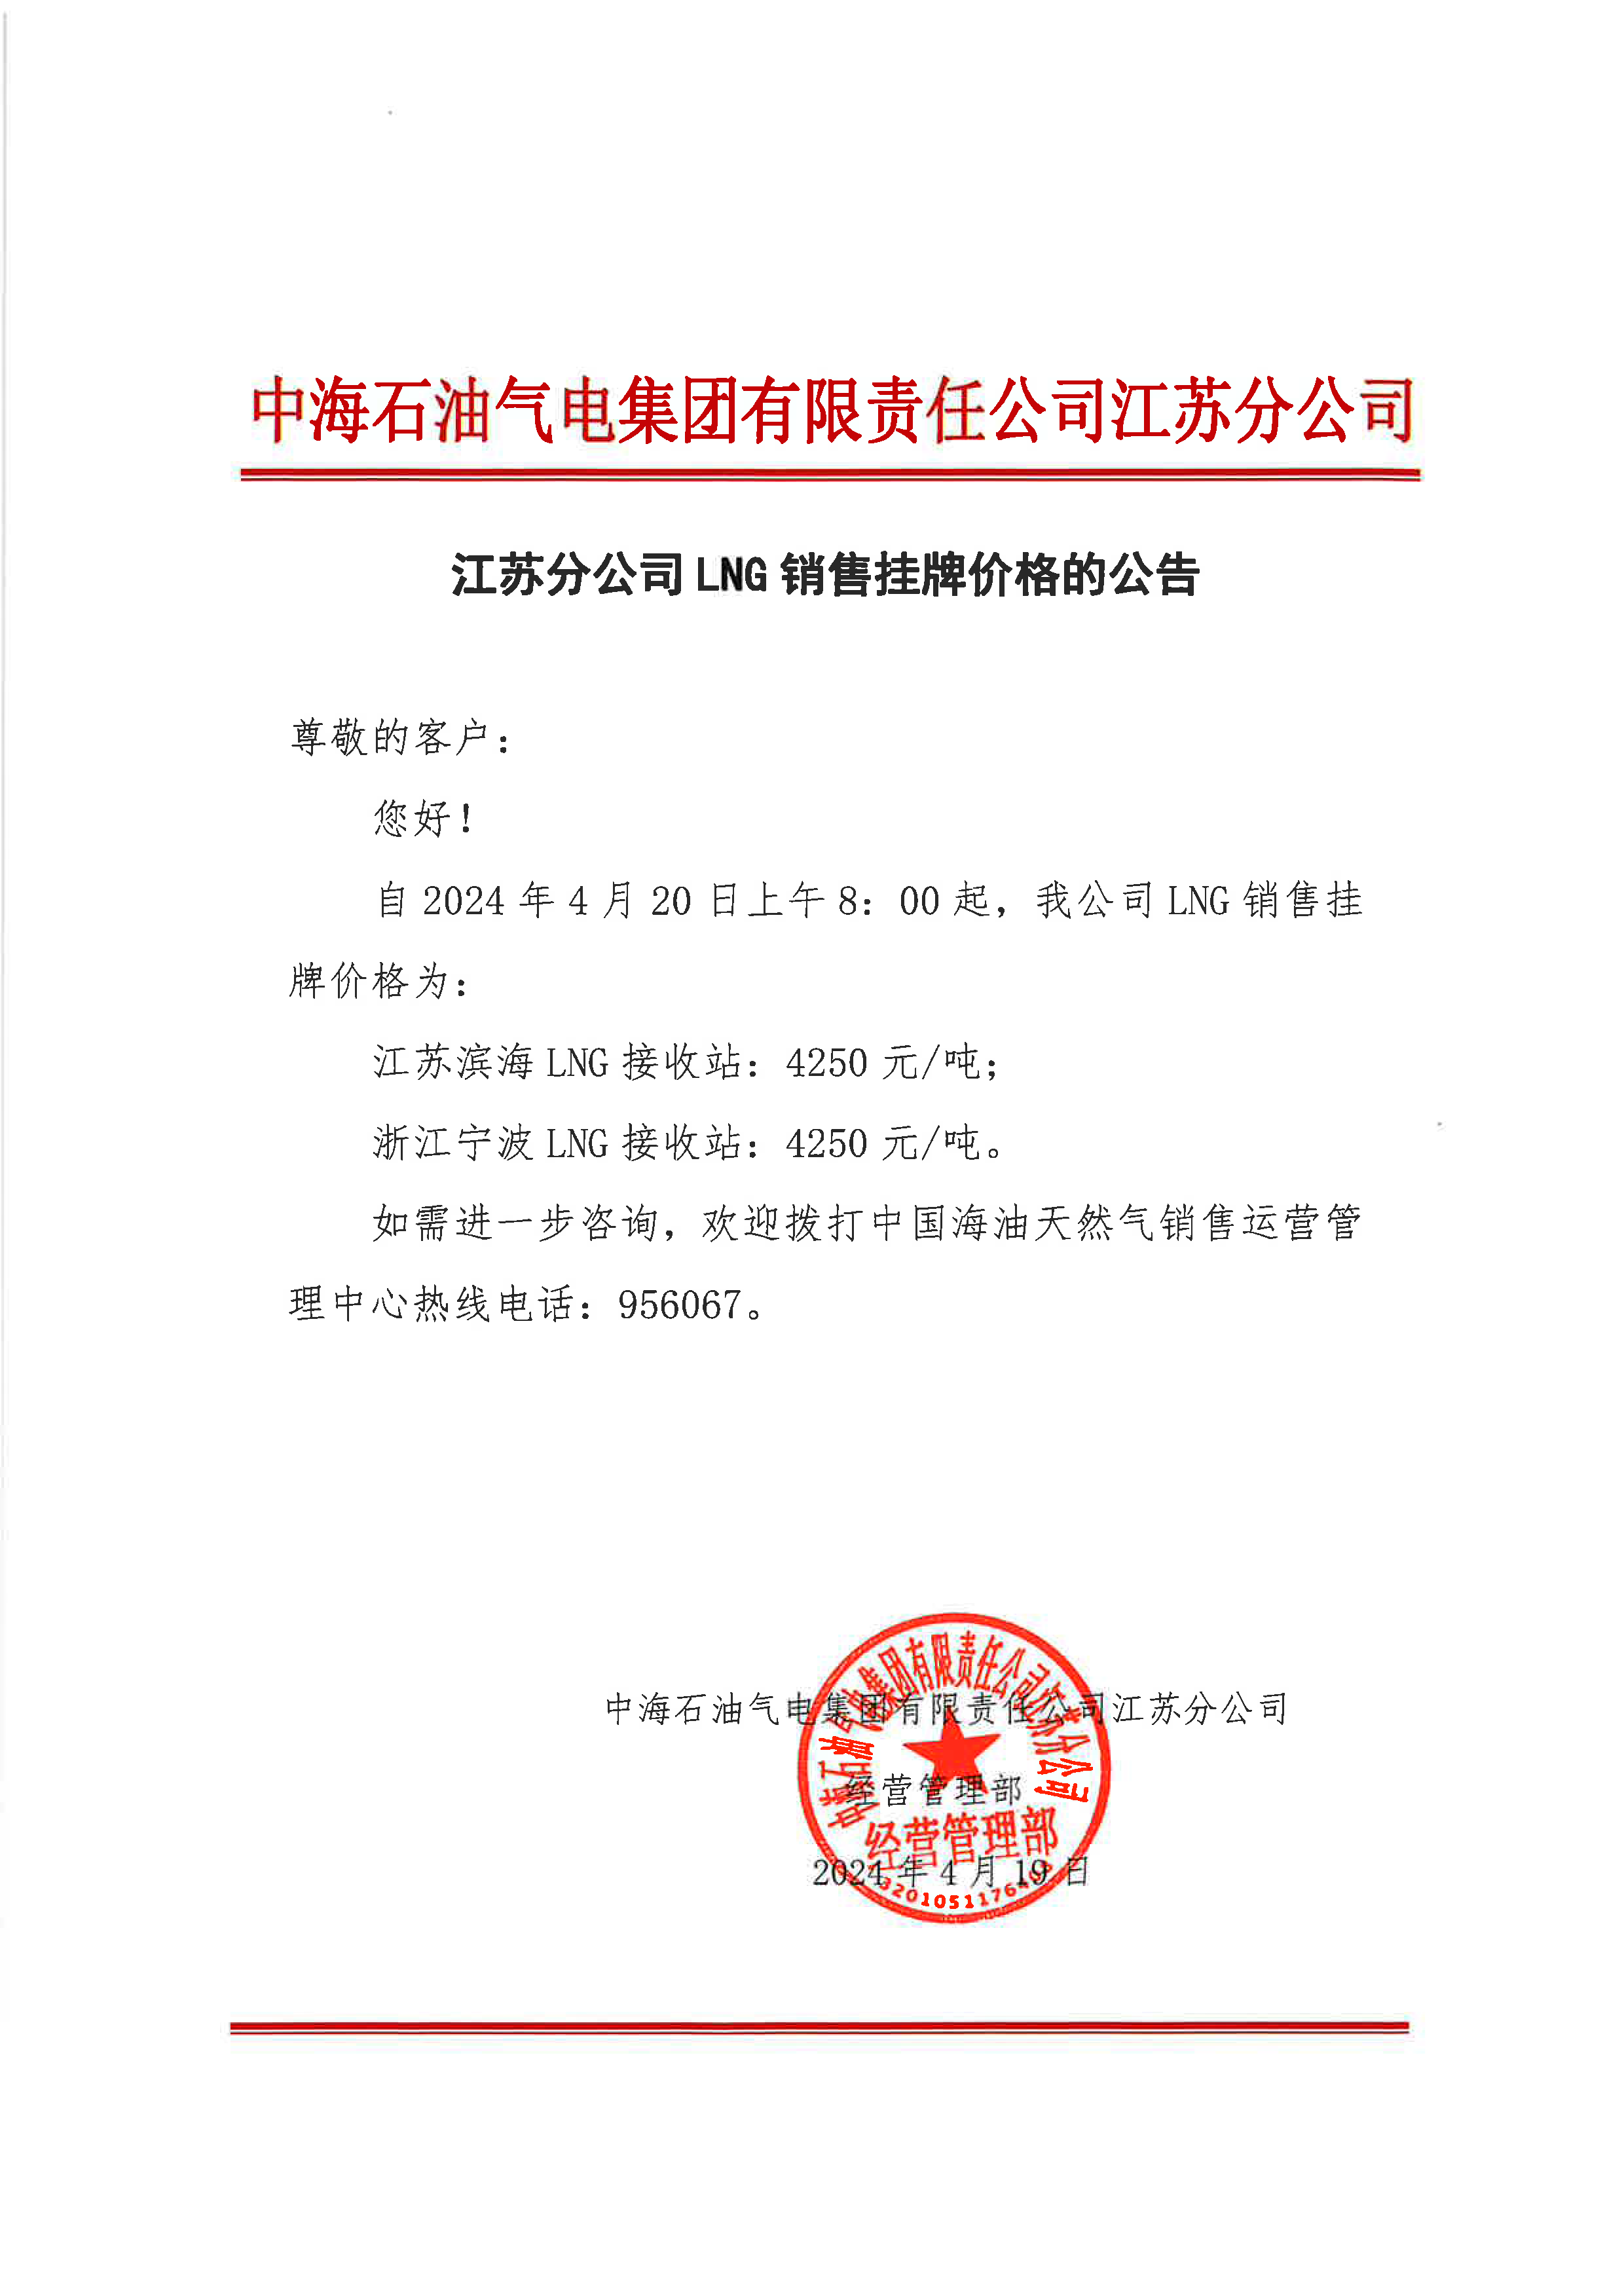 中海油江苏分公司关于4月20日华东苏皖市场价格调整公告.png